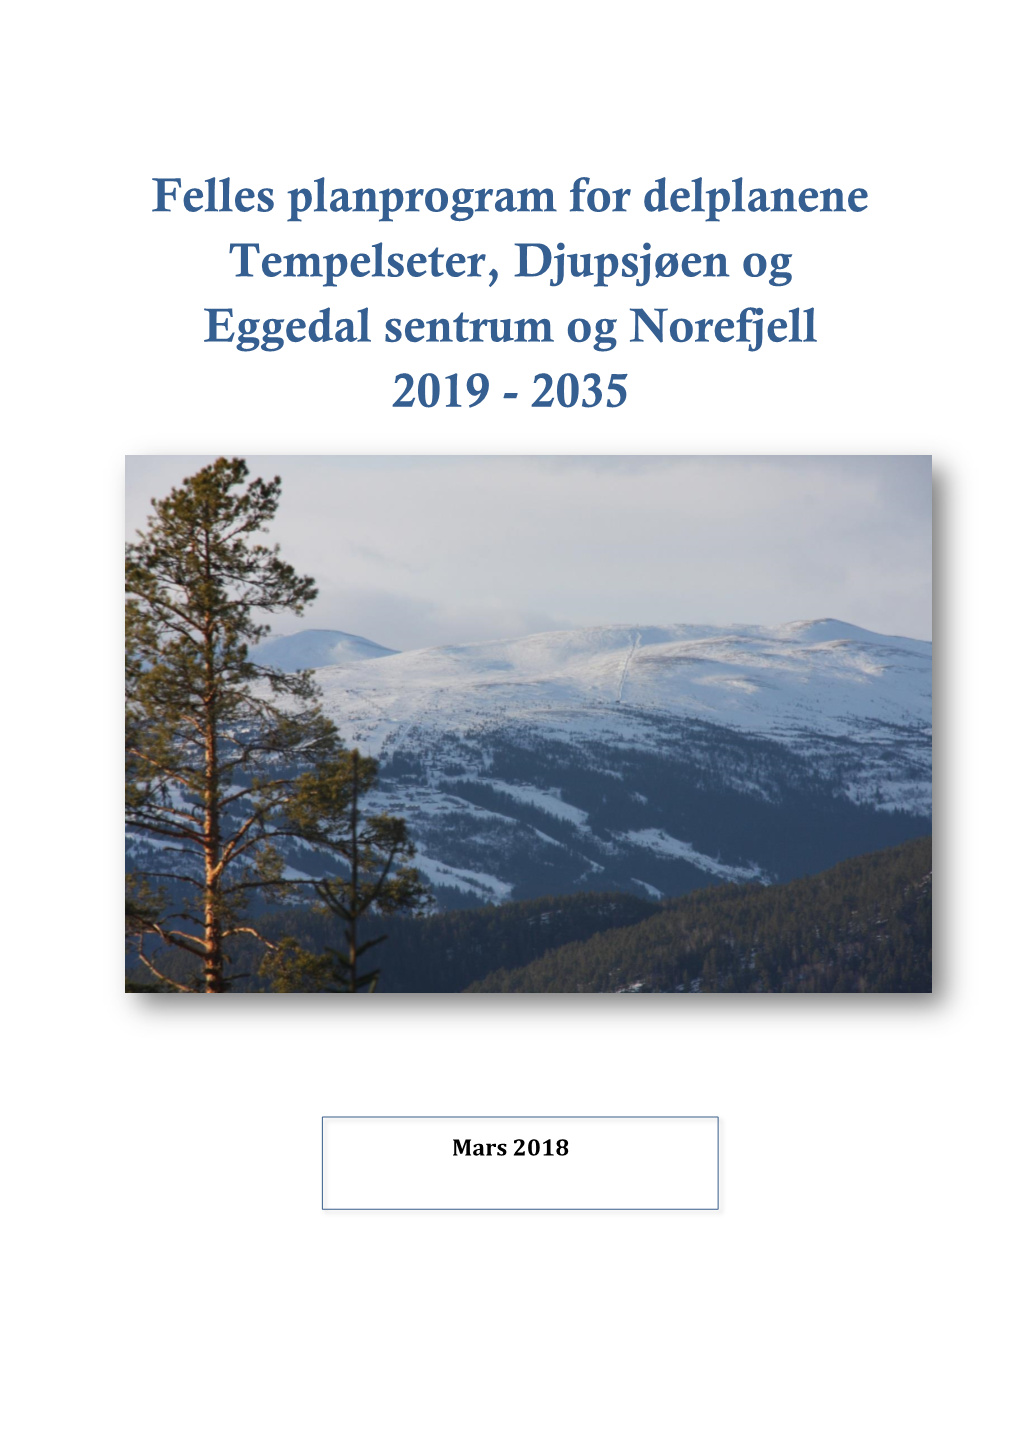 Felles Planprogram for Delplanene Tempelseter, Djupsjøen Og Eggedal Sentrum Og Norefjell 2019 - 2035